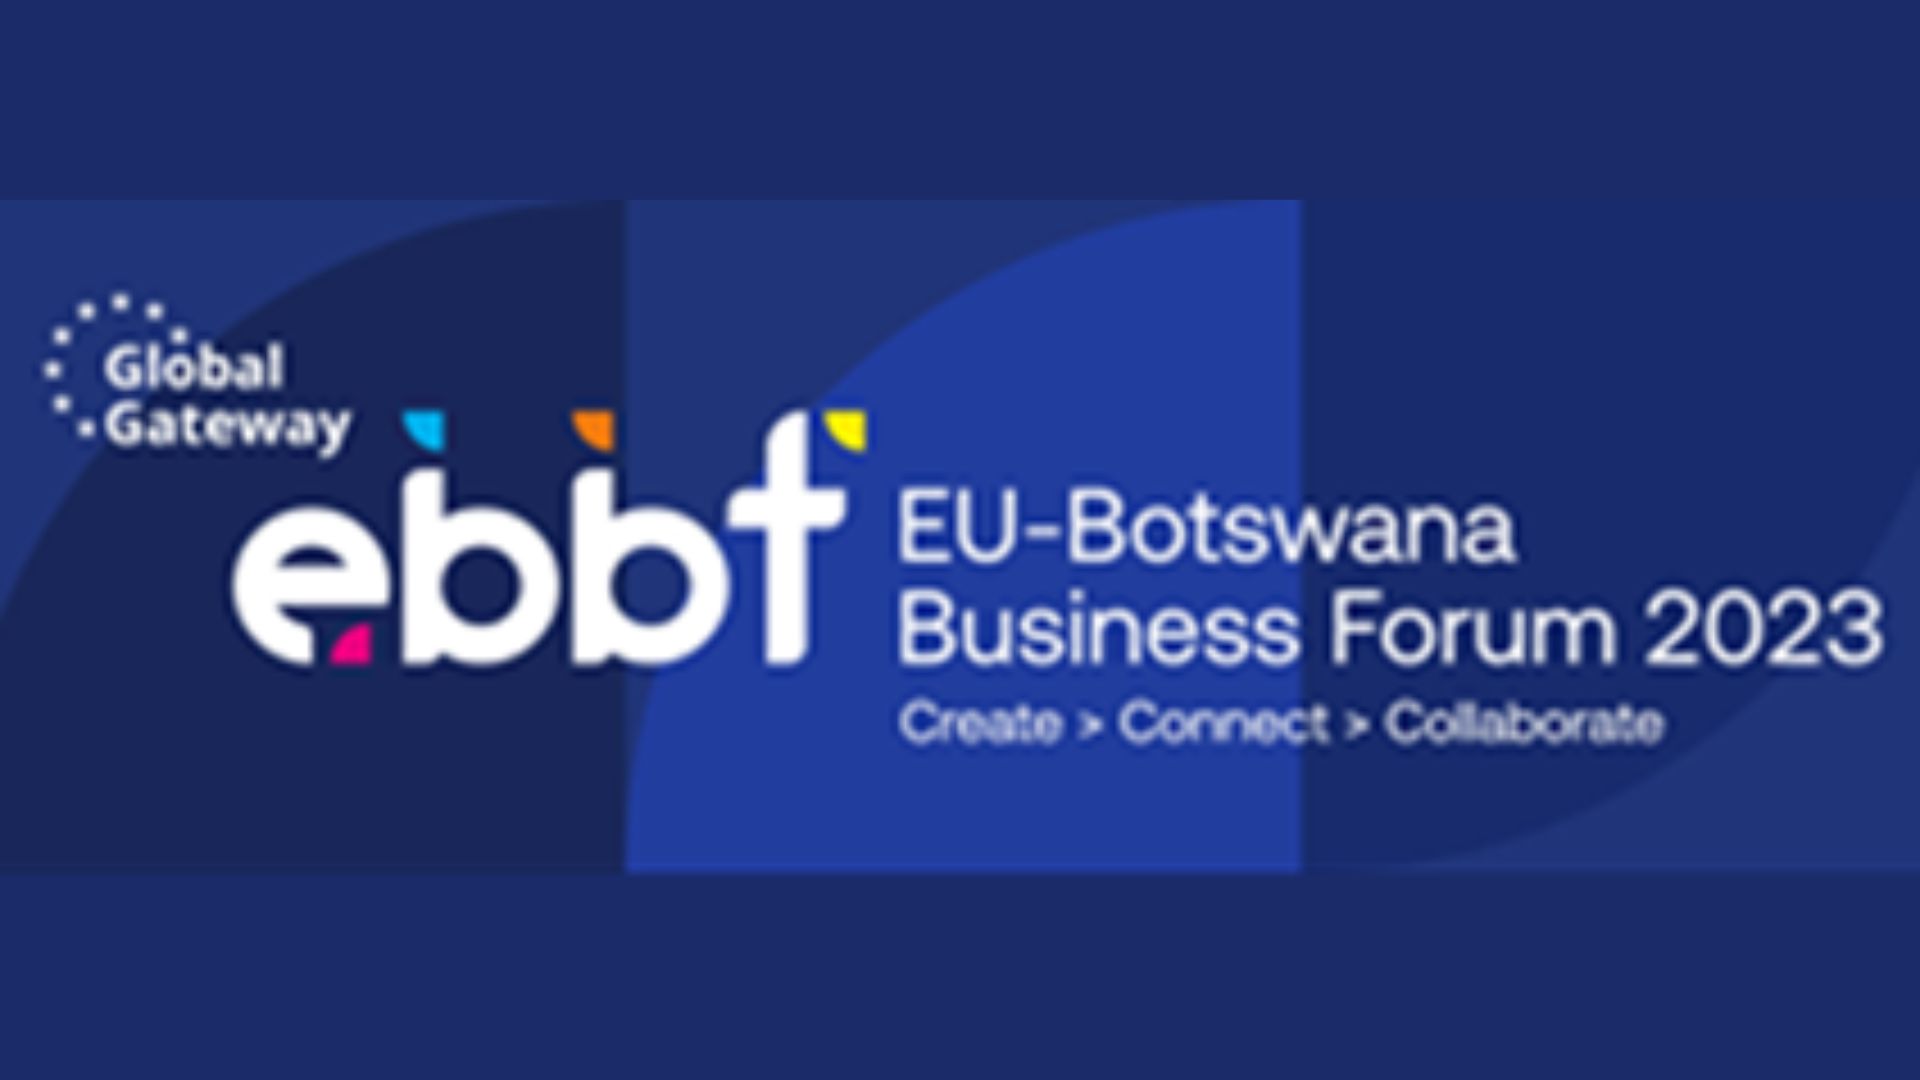 EU-Botswana Business Forum (EBBF)